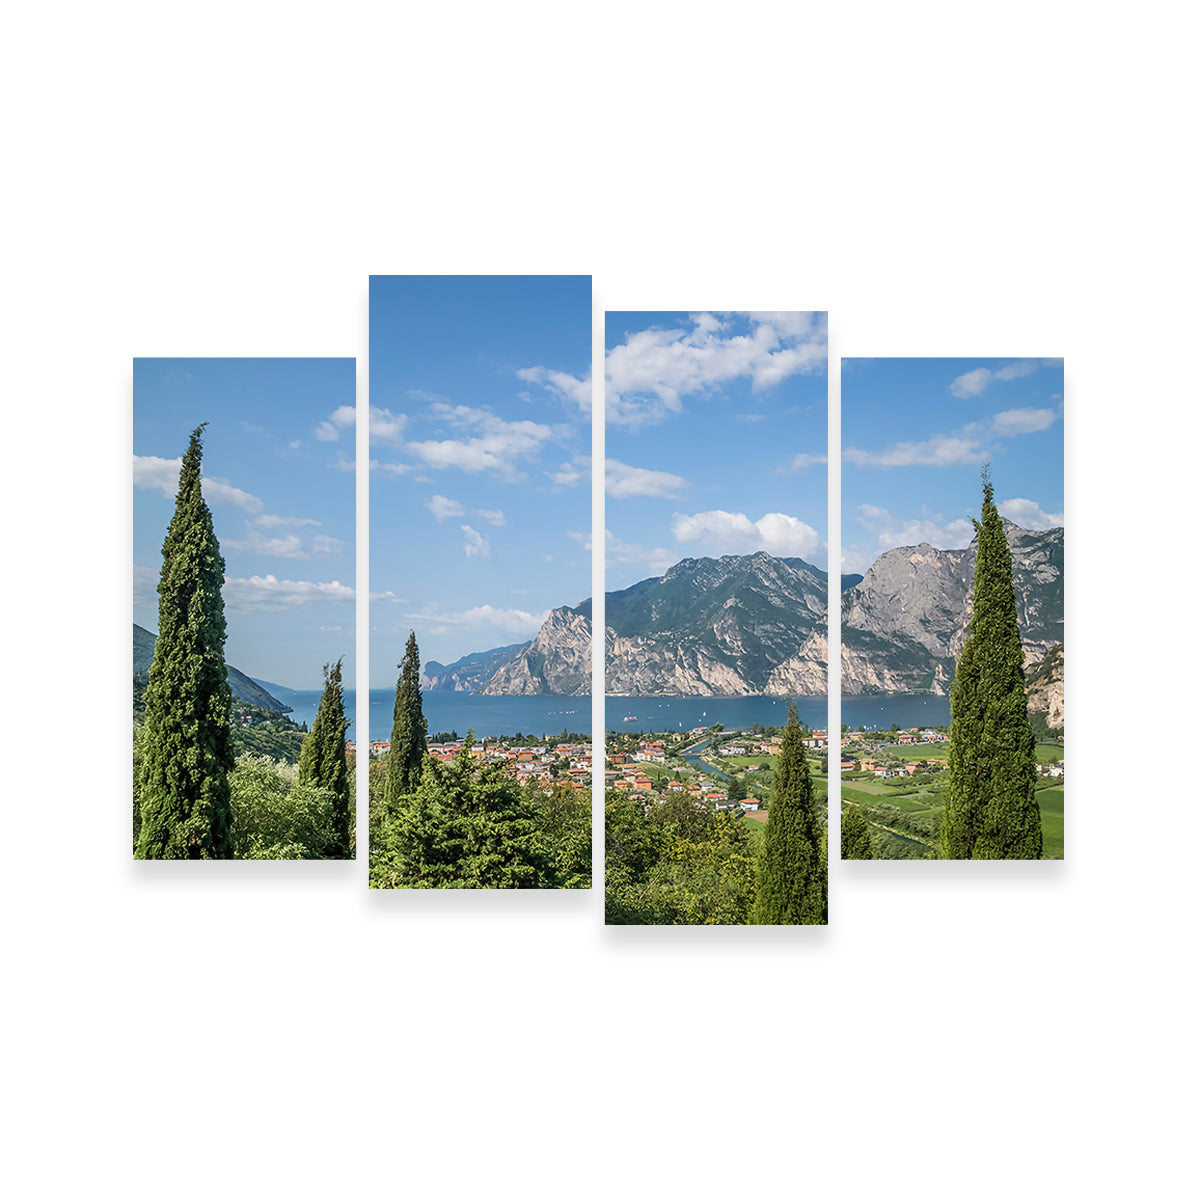 View to Lake Garda